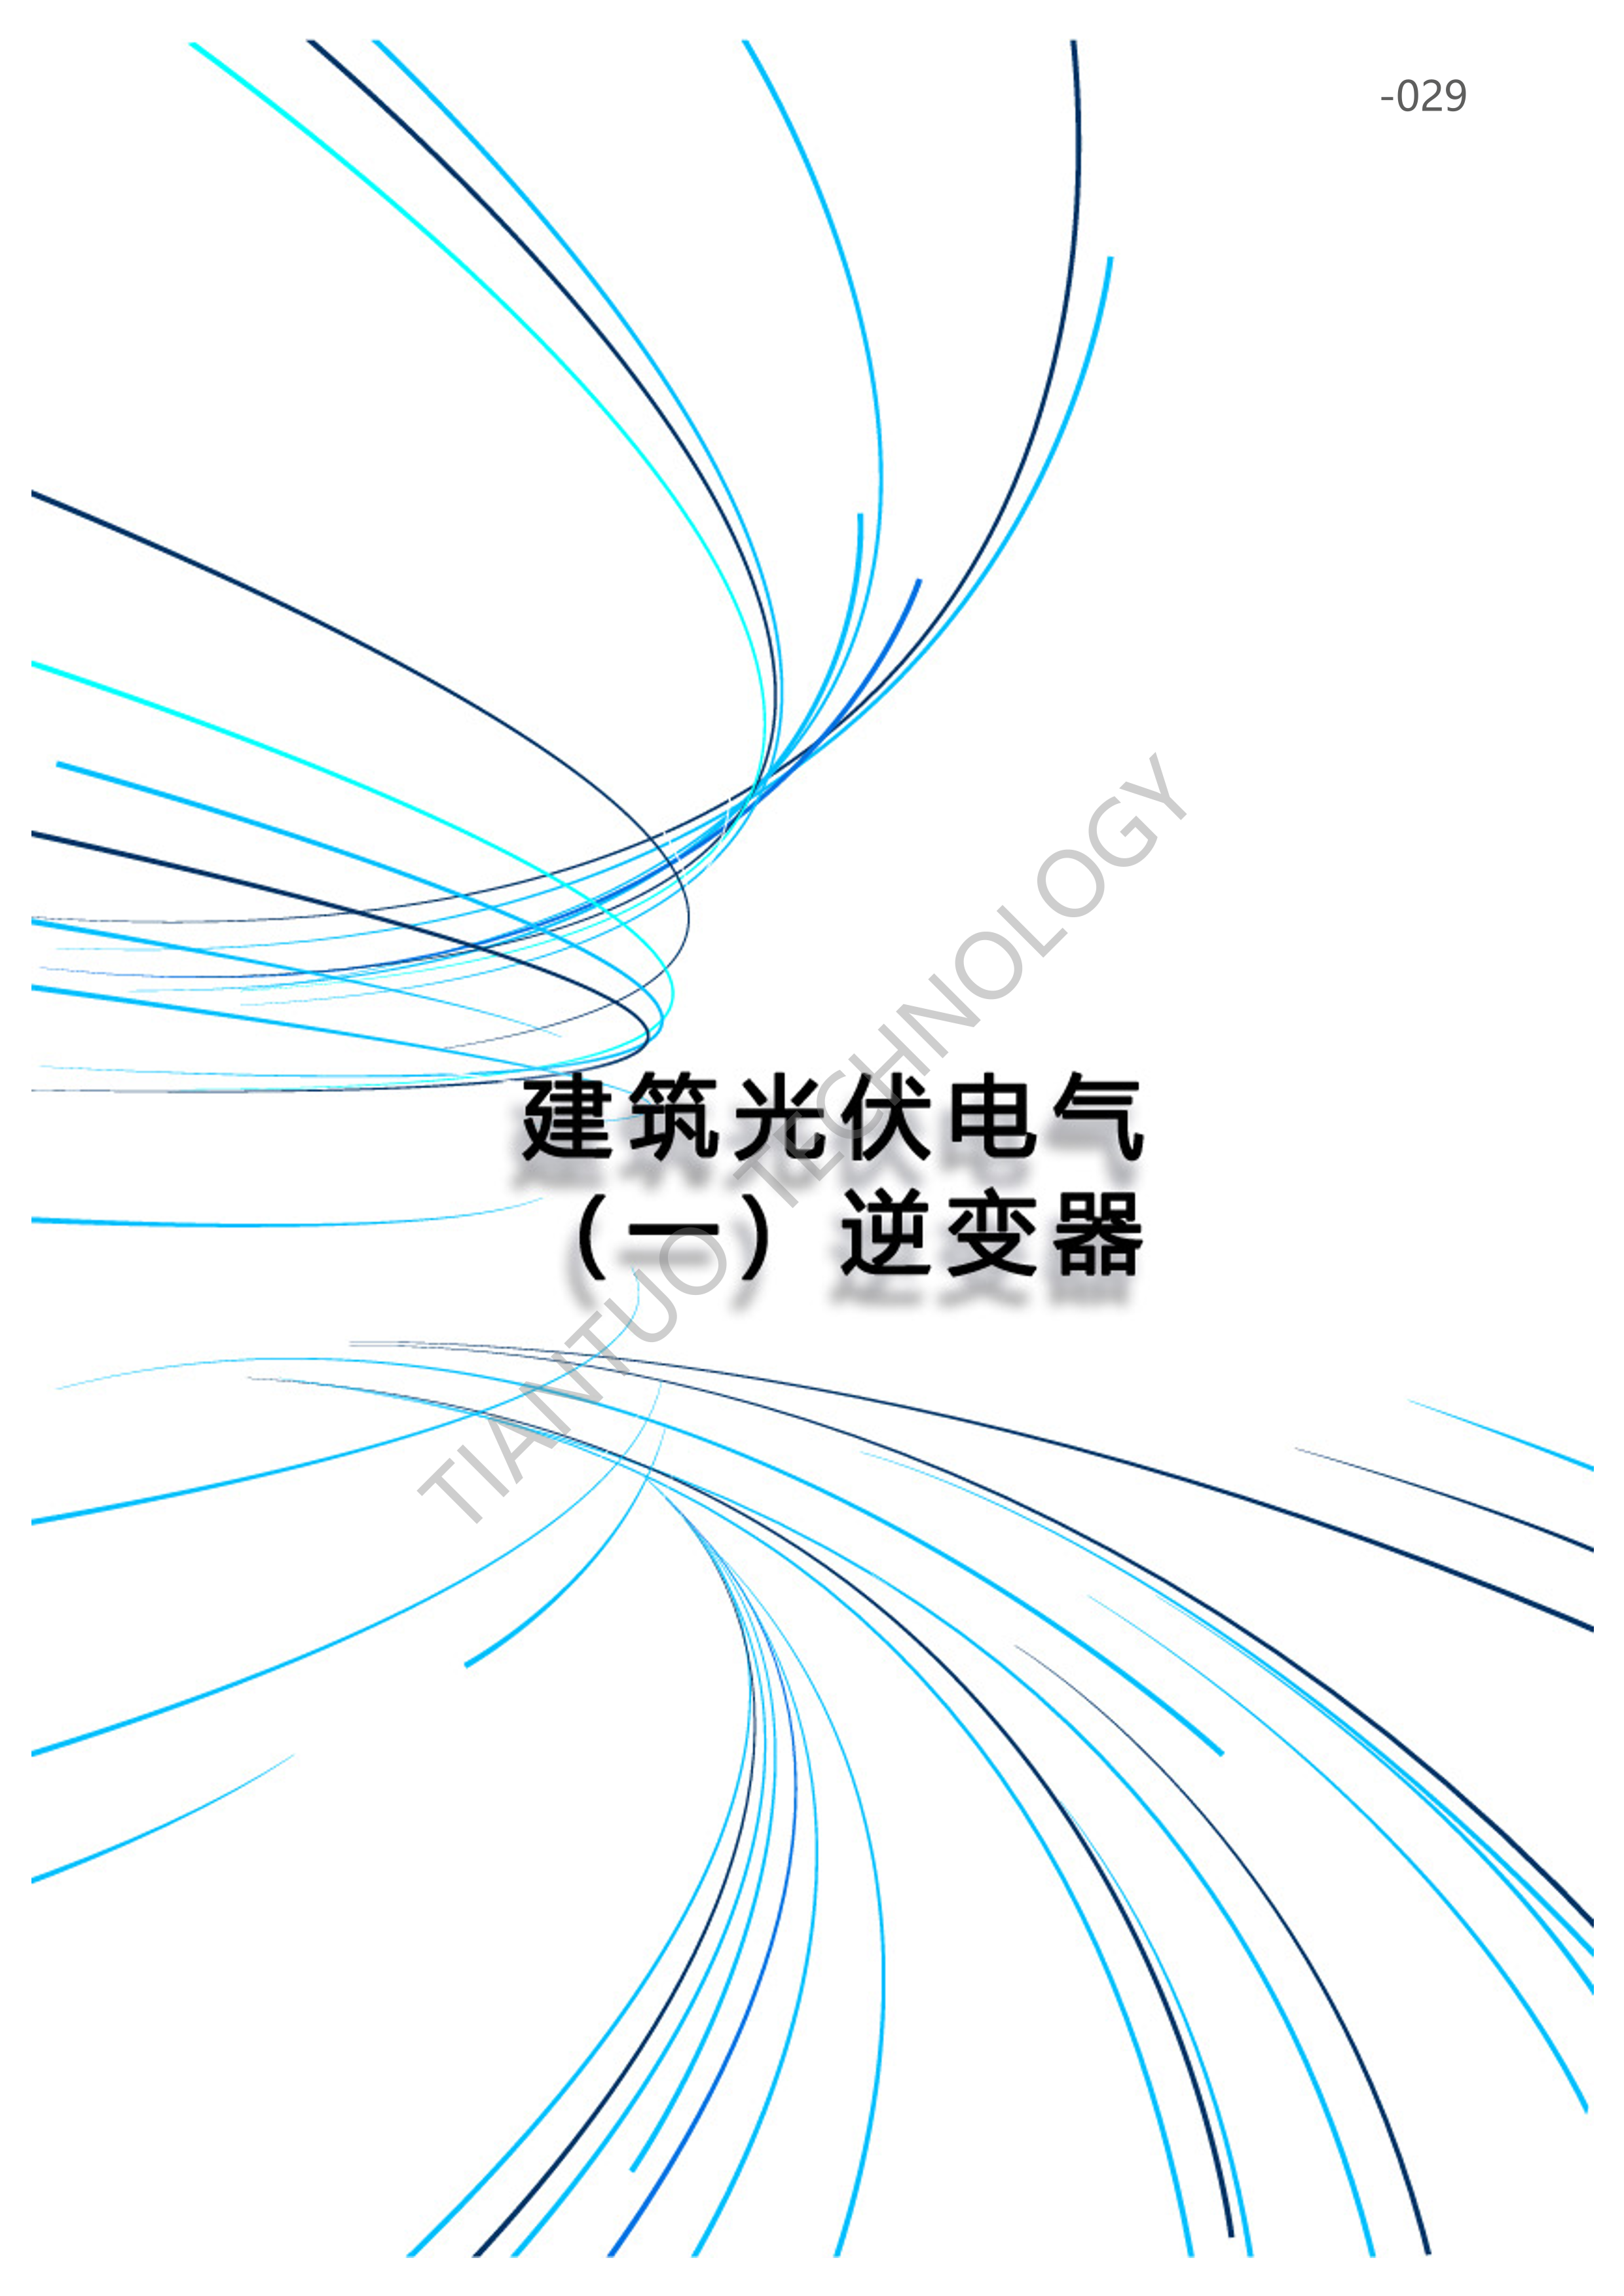 天托科技_BIPV分布式光伏发电技术手册5.0_32.png